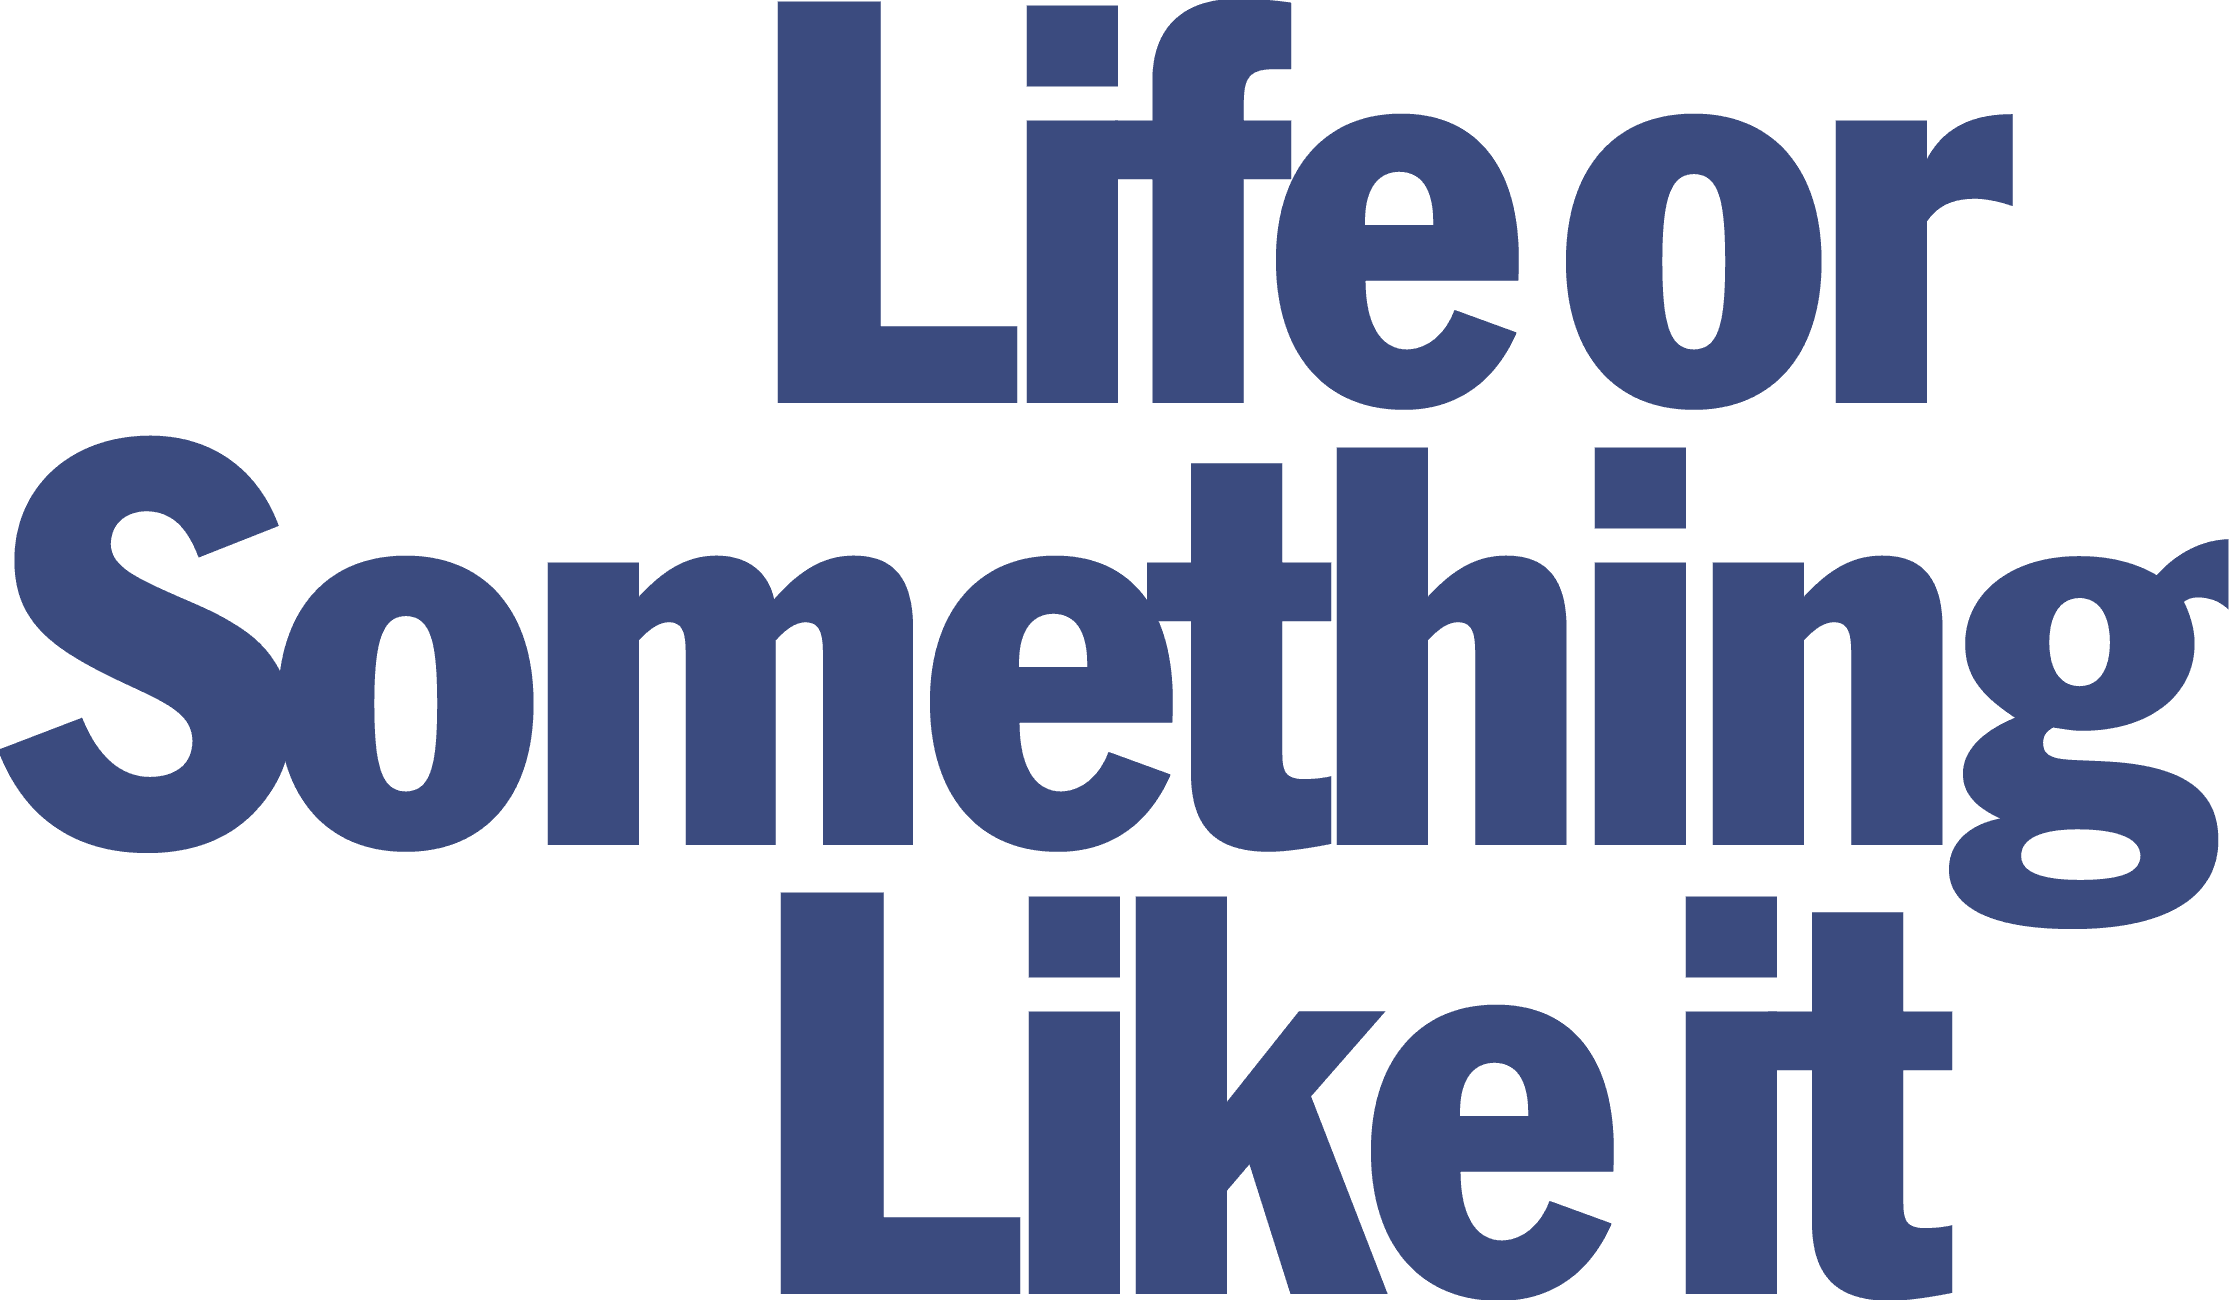 Life or Something Like It logo